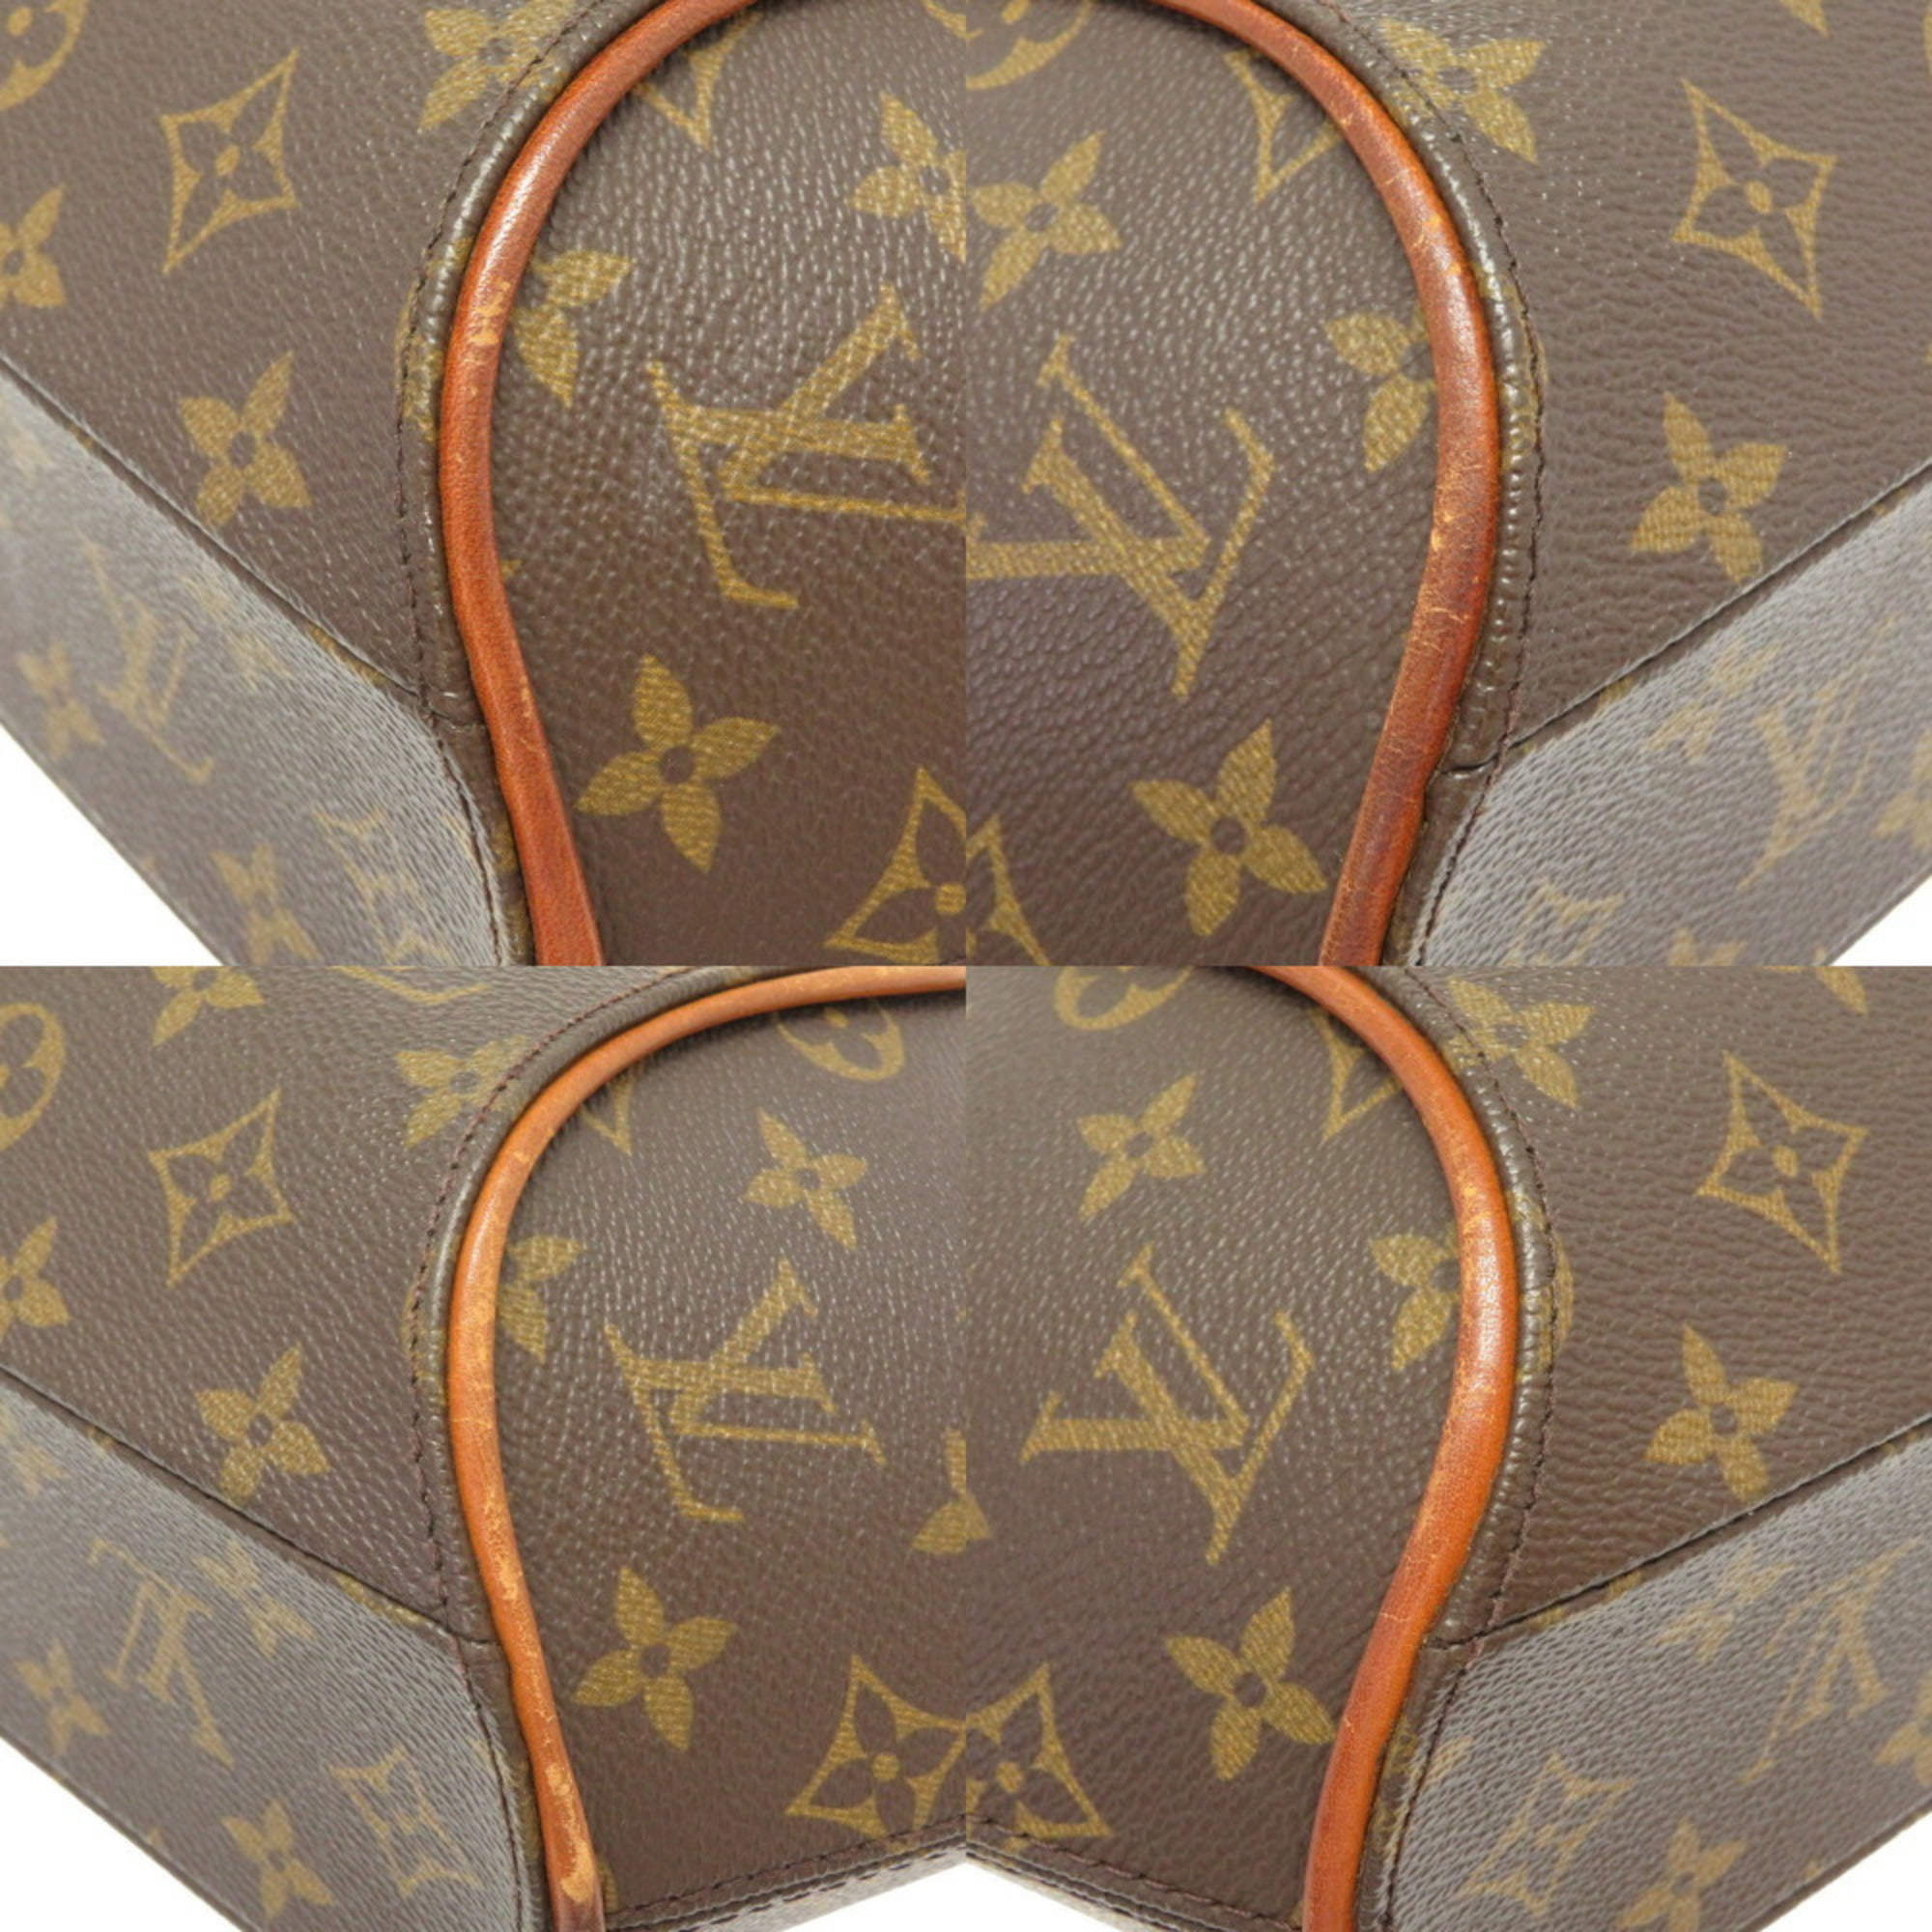 Authenticated Used Louis Vuitton Monogram Ellipse PM M51127 Handbag 0101 LOUIS  VUITTON 